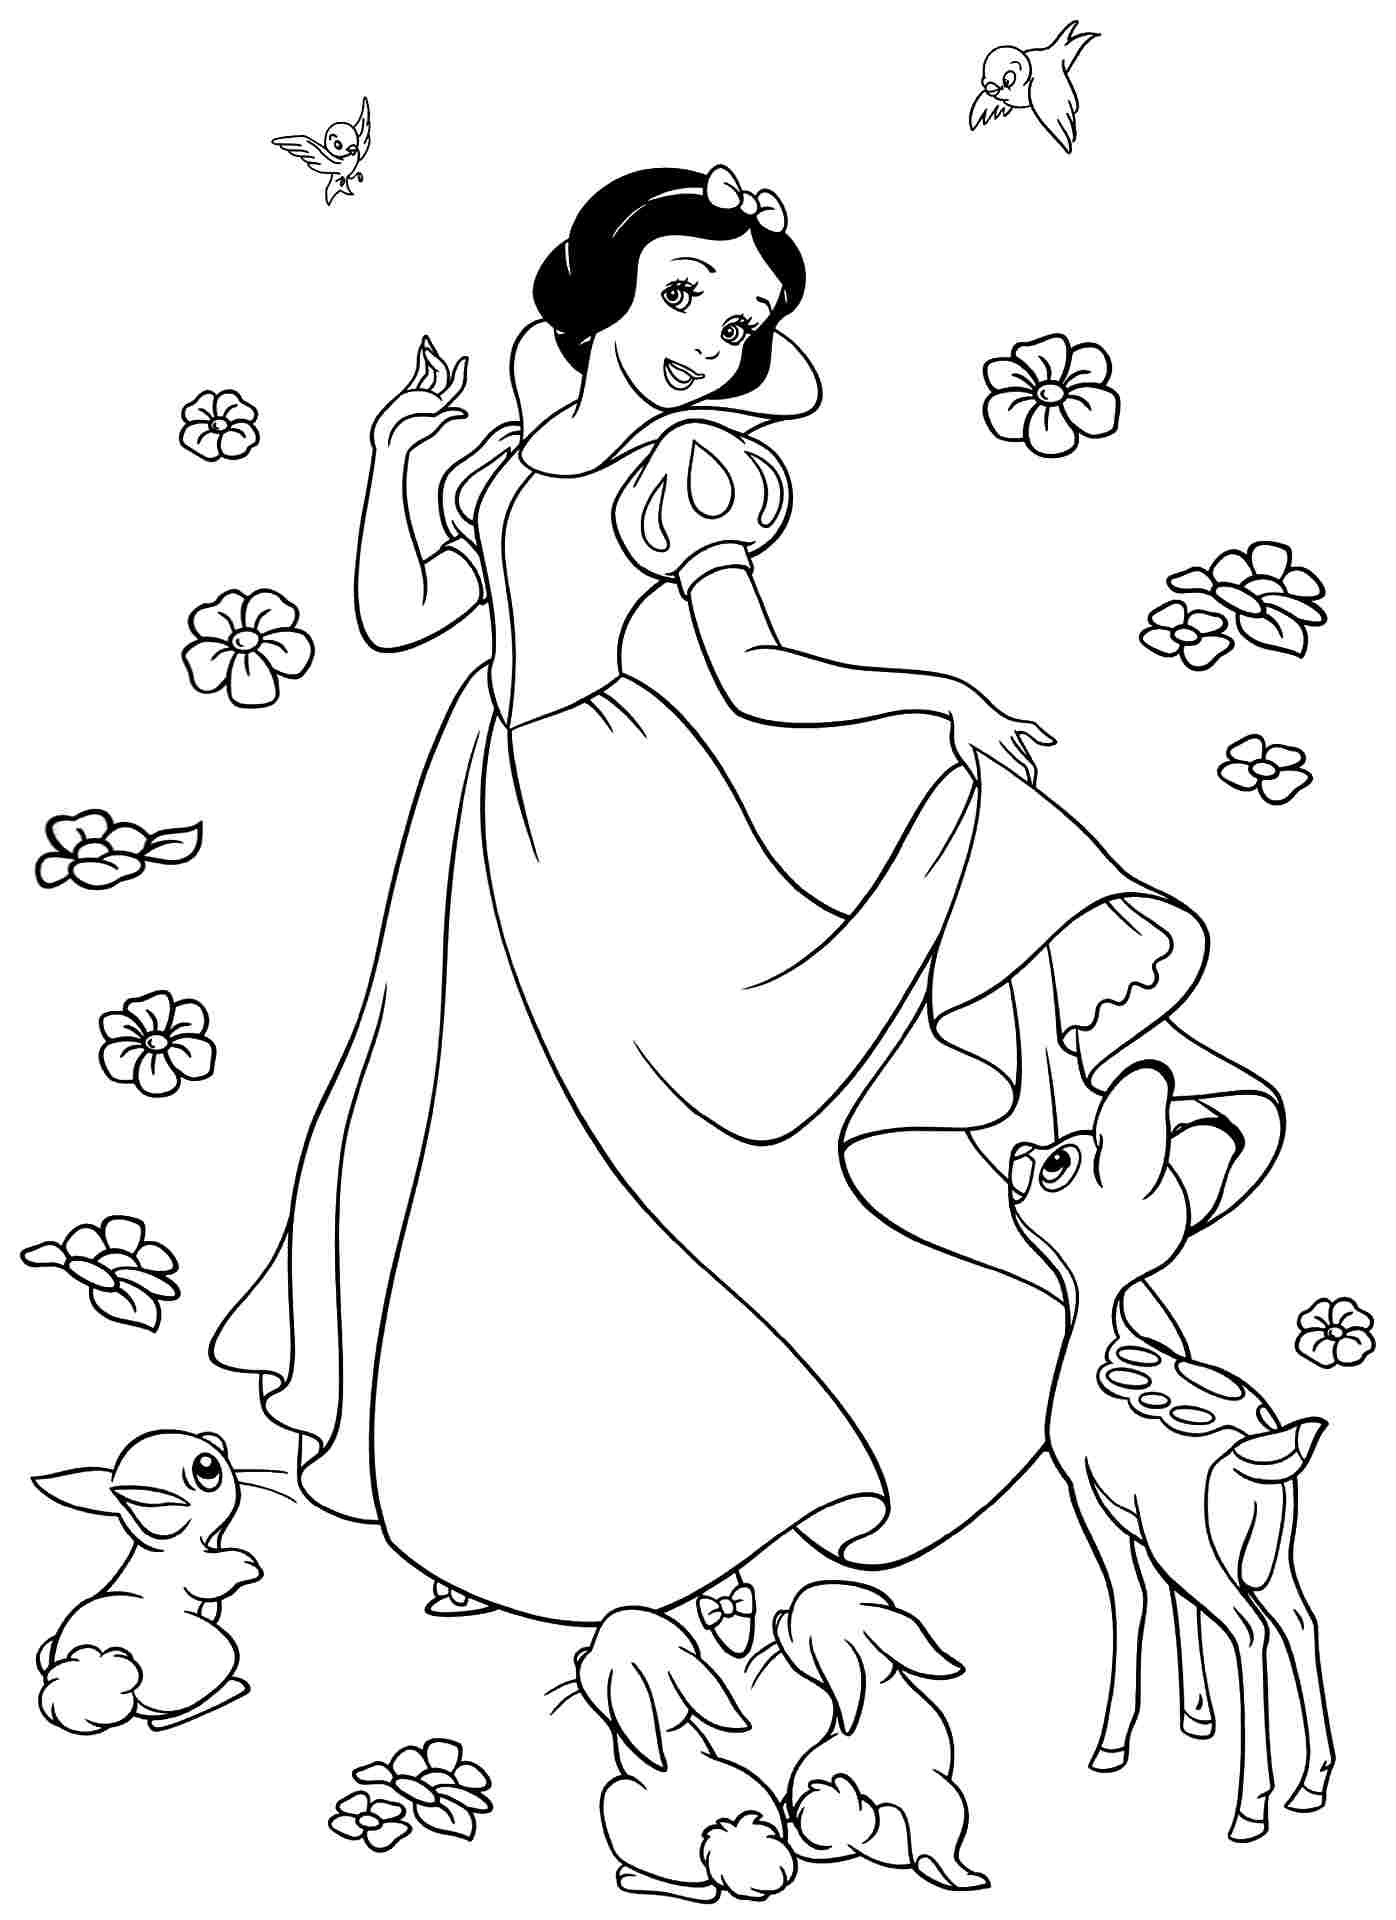 Branca de Neve e Príncipe 02 – Imagens para Colorir